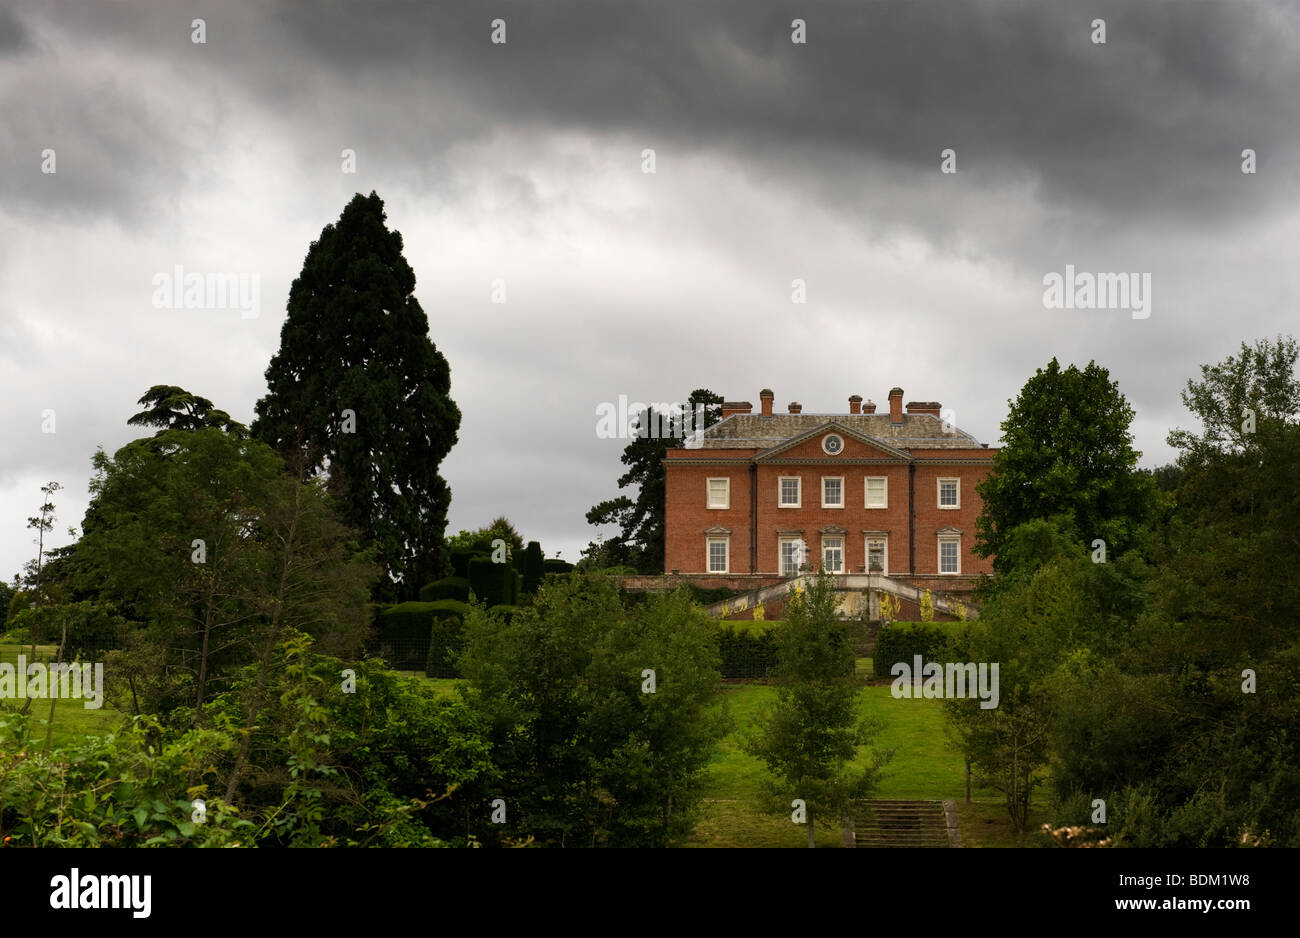 Eine Landschaftsansicht Culham House in Chilterns Landschaft in der Nähe von Hambleden, Buckinghamshire, Großbritannien Stockfoto